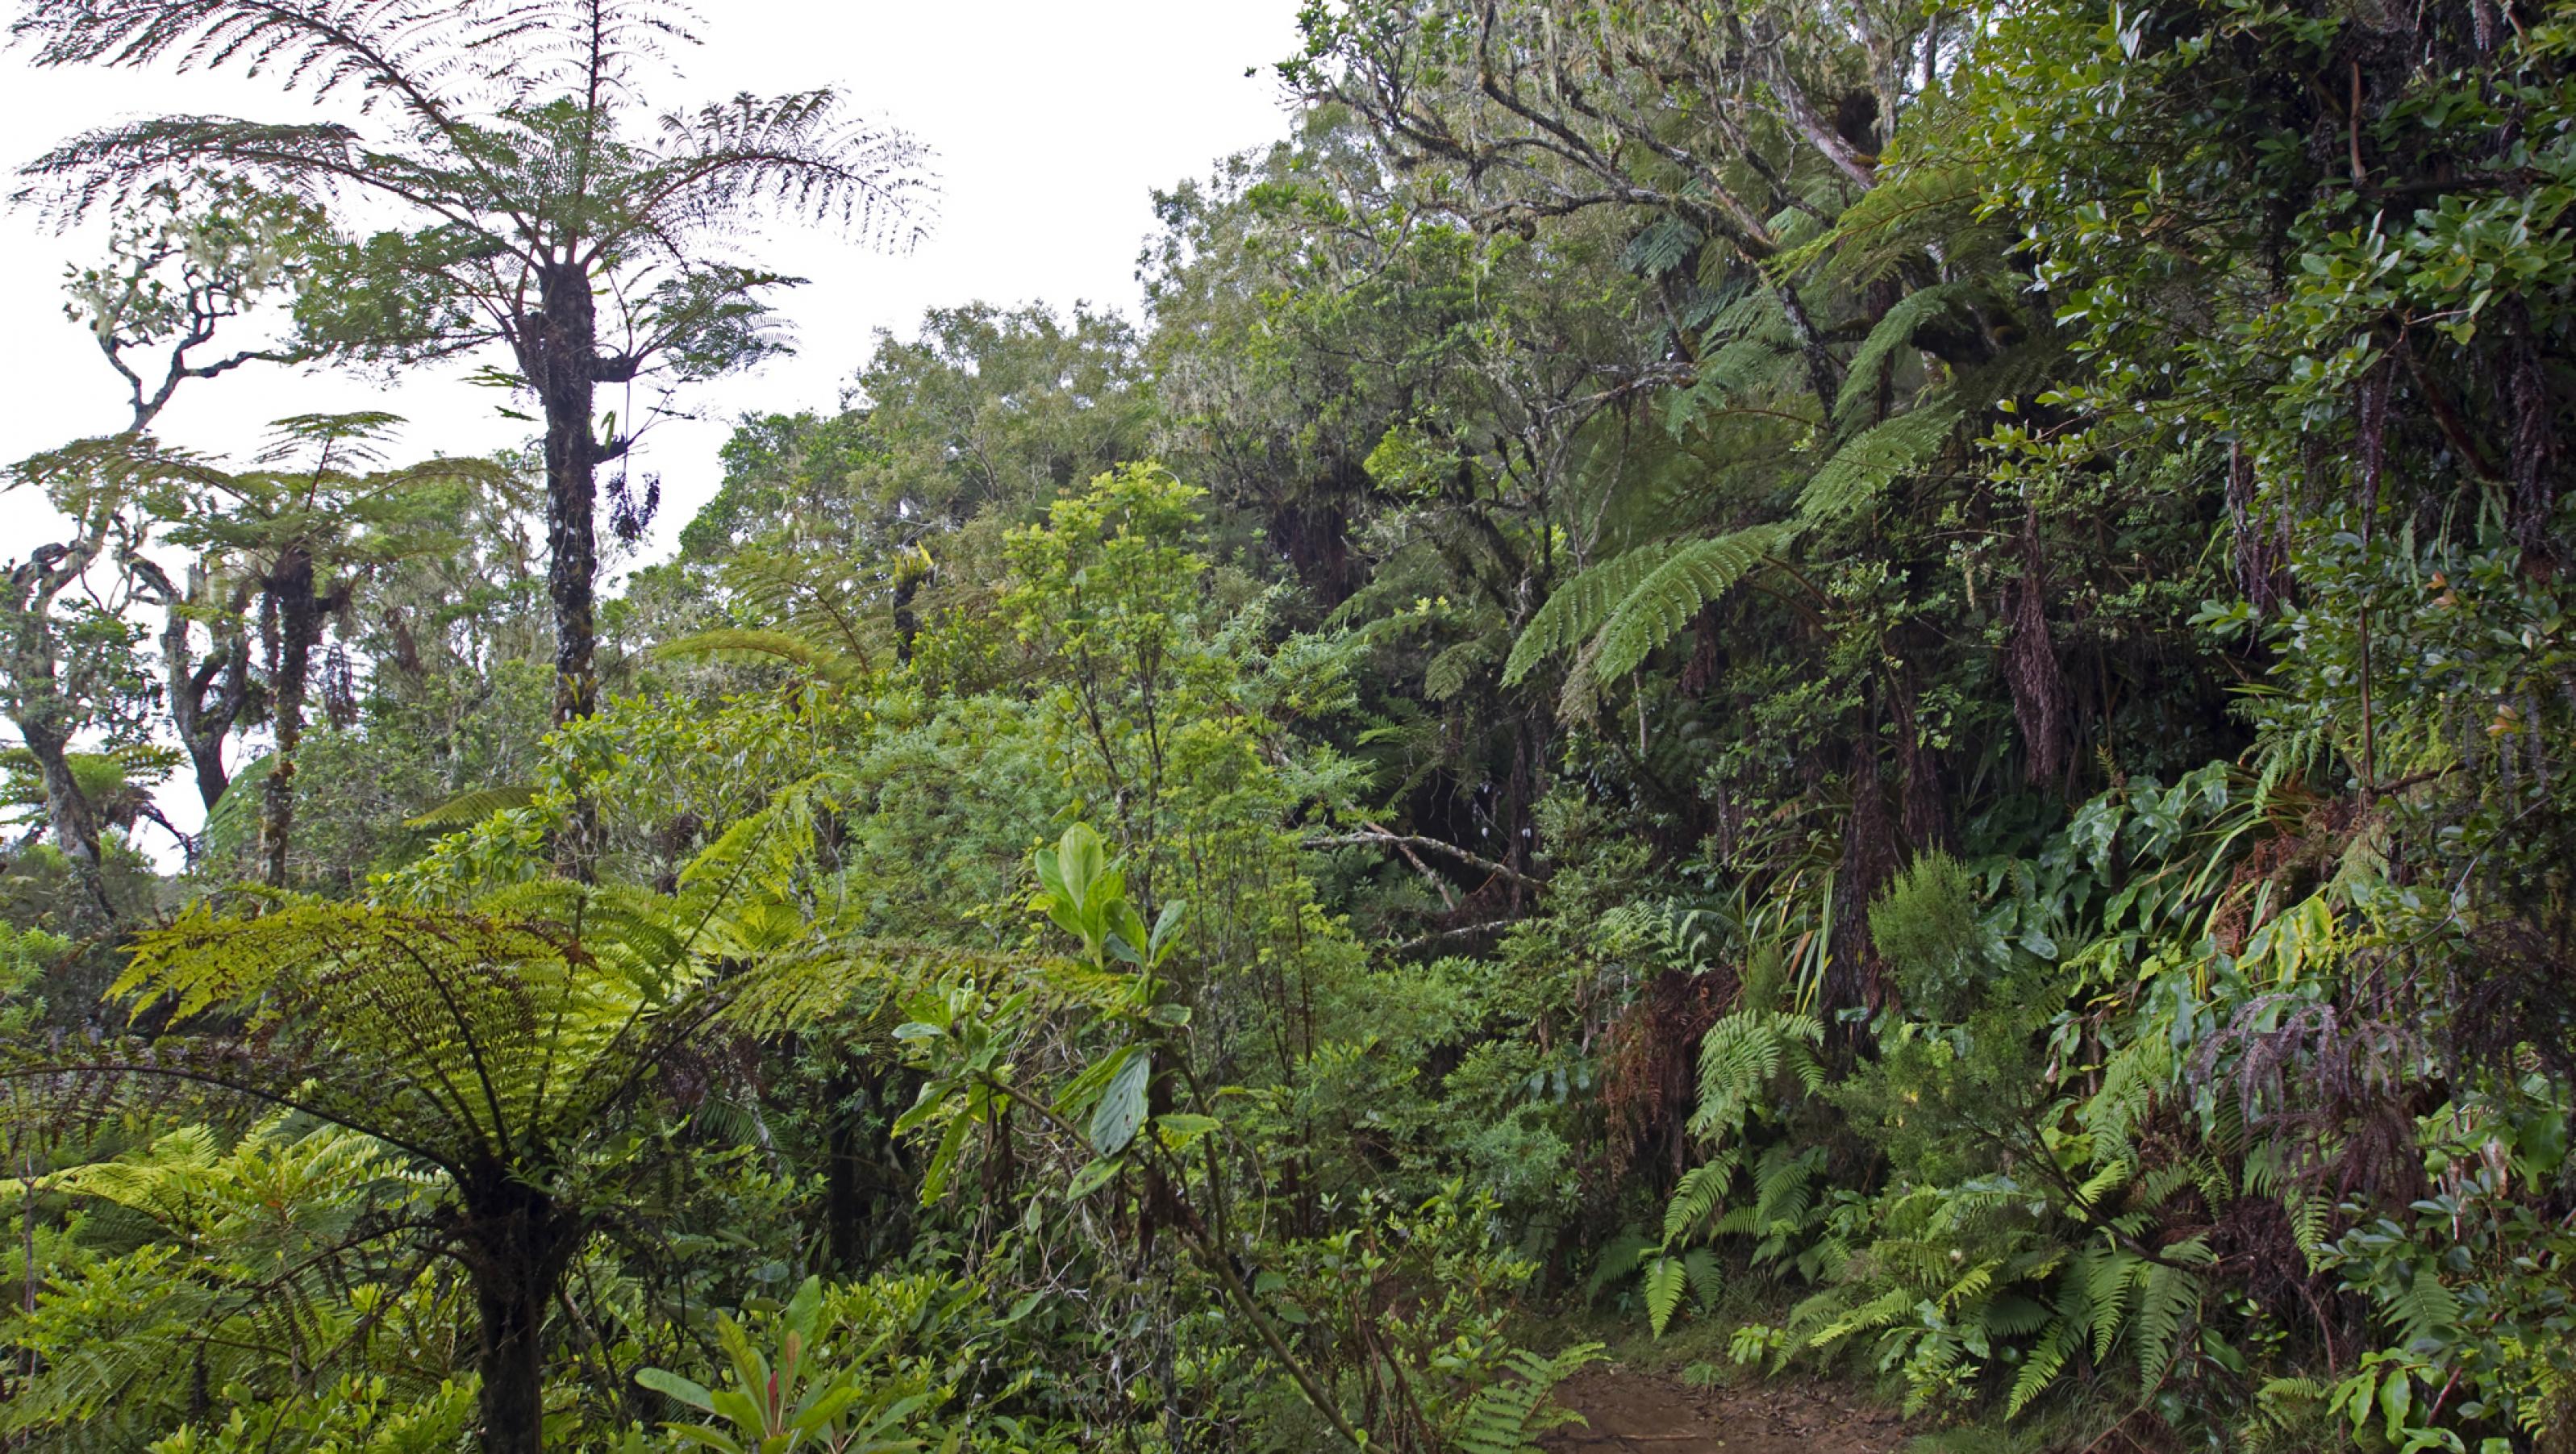 Eine Landschaftsaufnahme aus dem Brutgebiet des Tuit Tuit, die dichten Regenwald zeigt